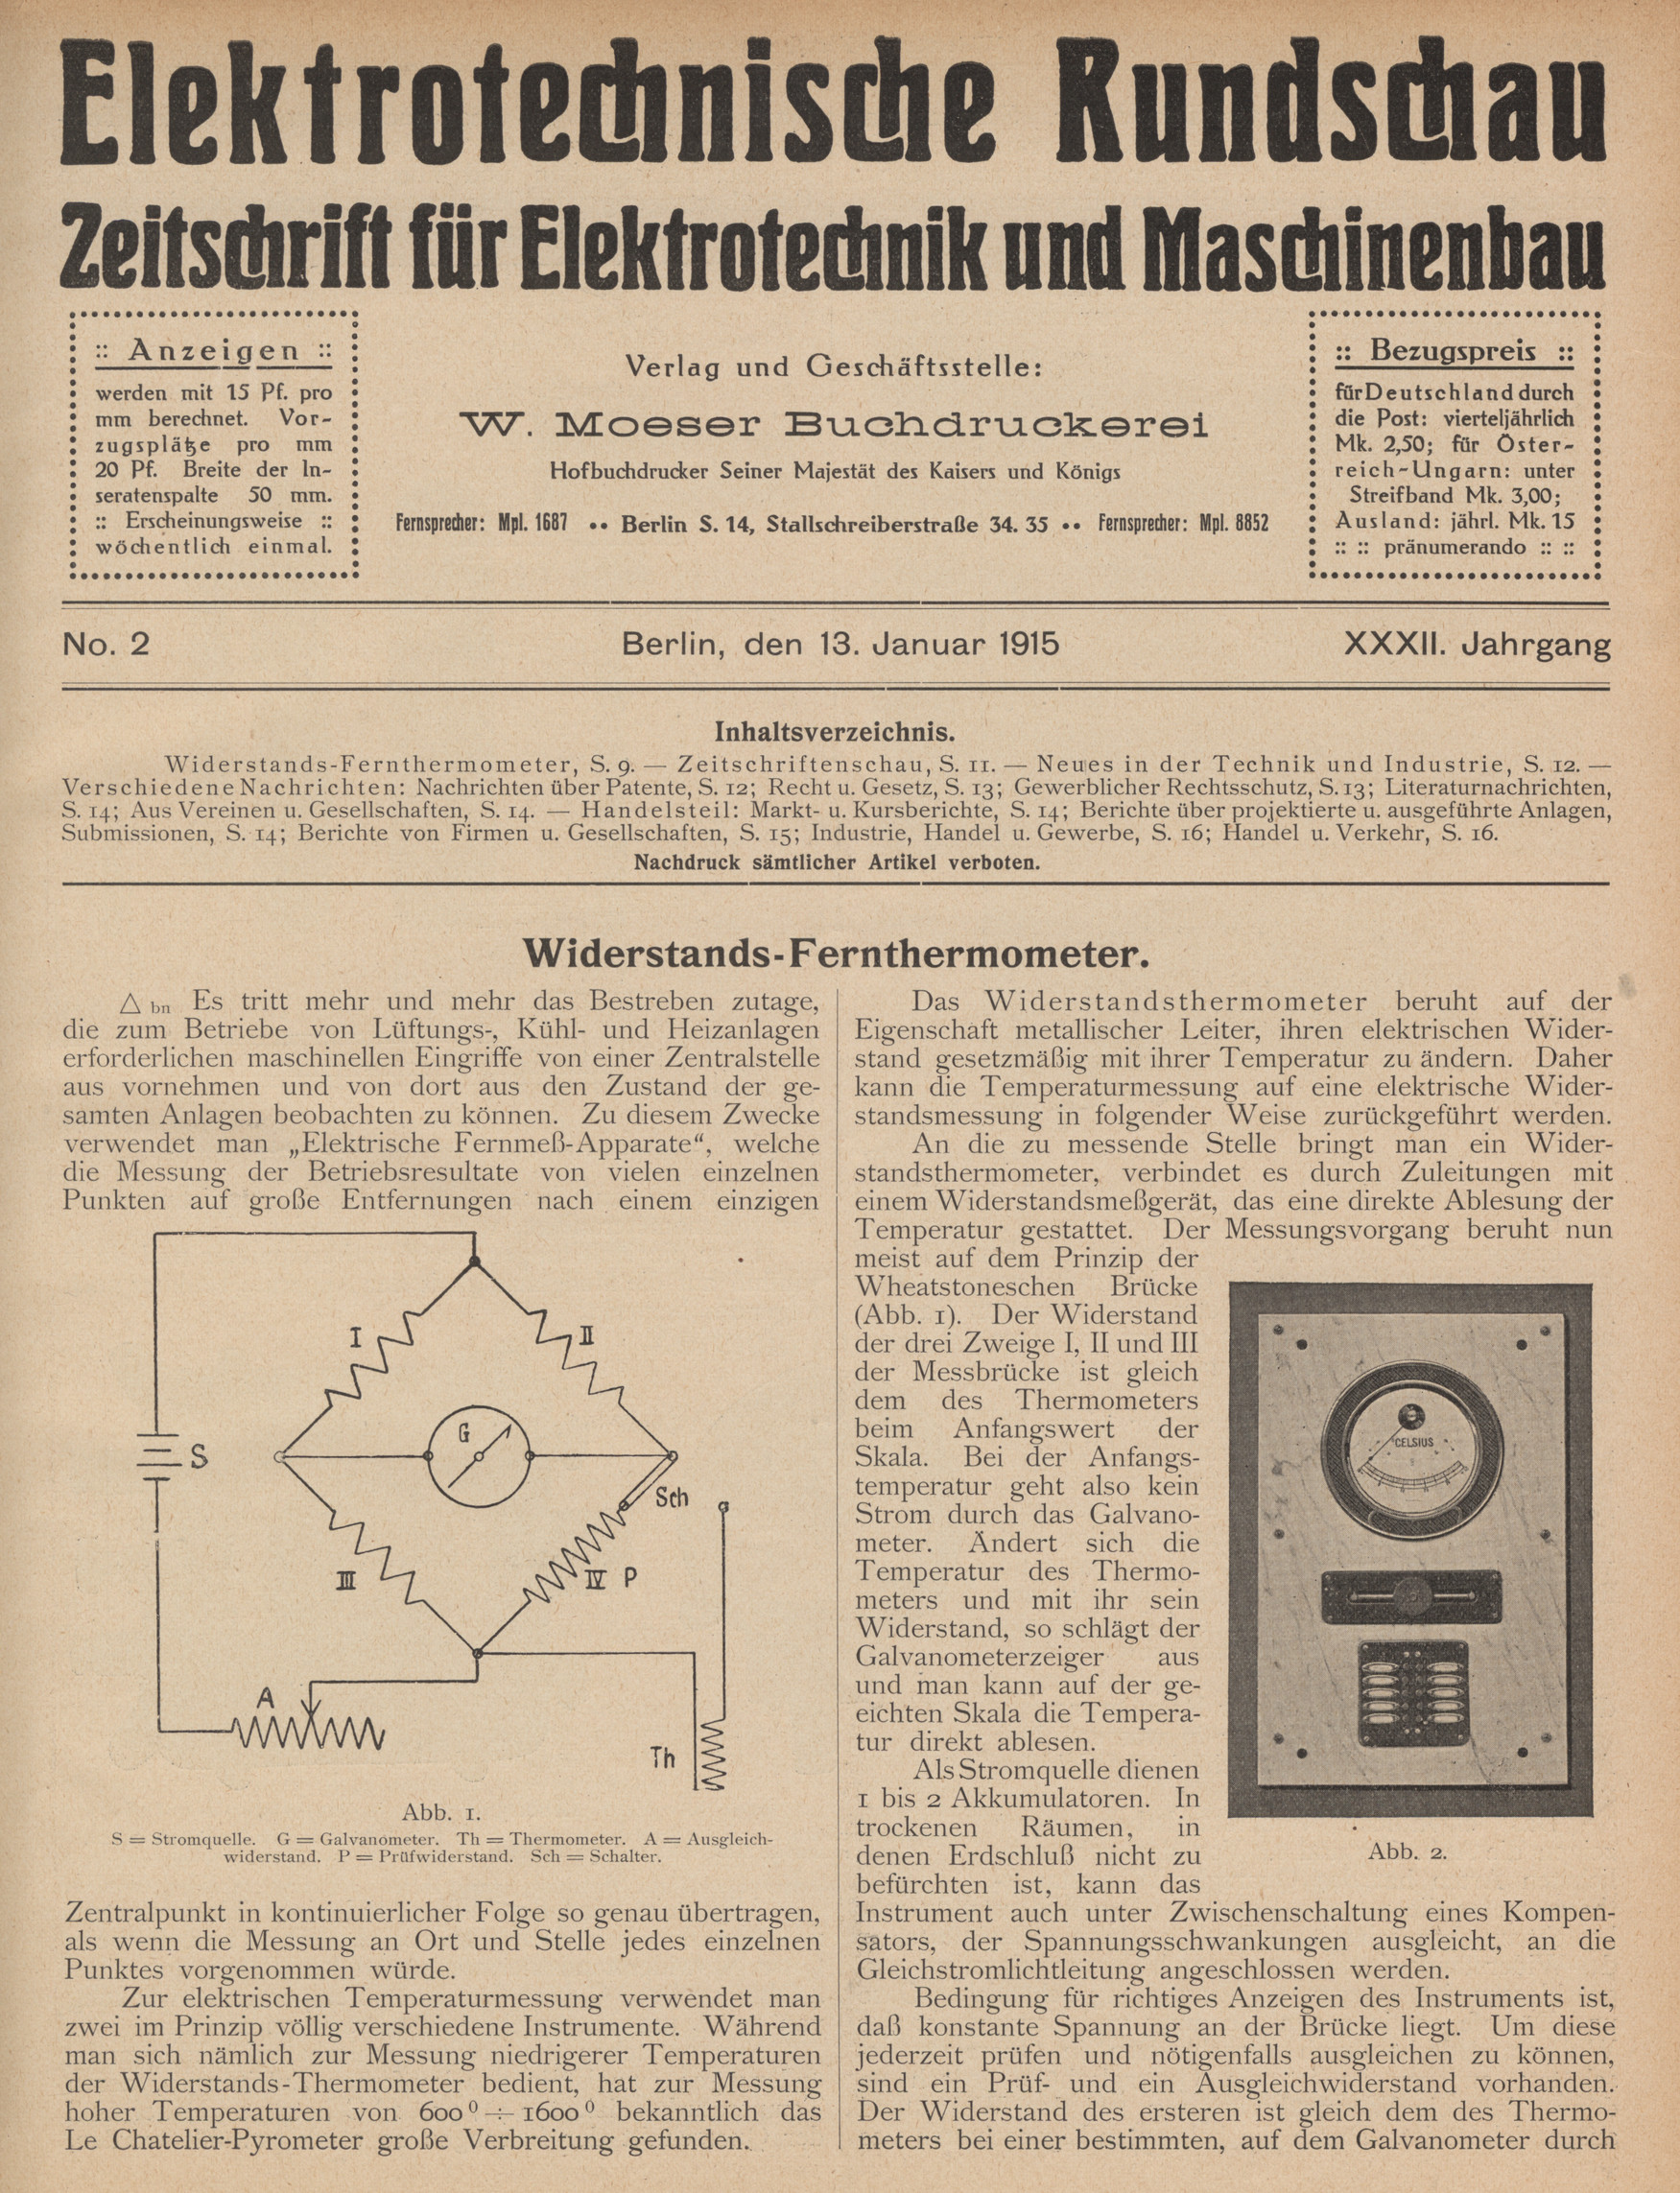 Elektrotechnische Rundschau : Zeitschrift für Elektrotechnik und Maschinenbau + Polytechnische Rundschau, No. 2, XXXII. Jahrgang